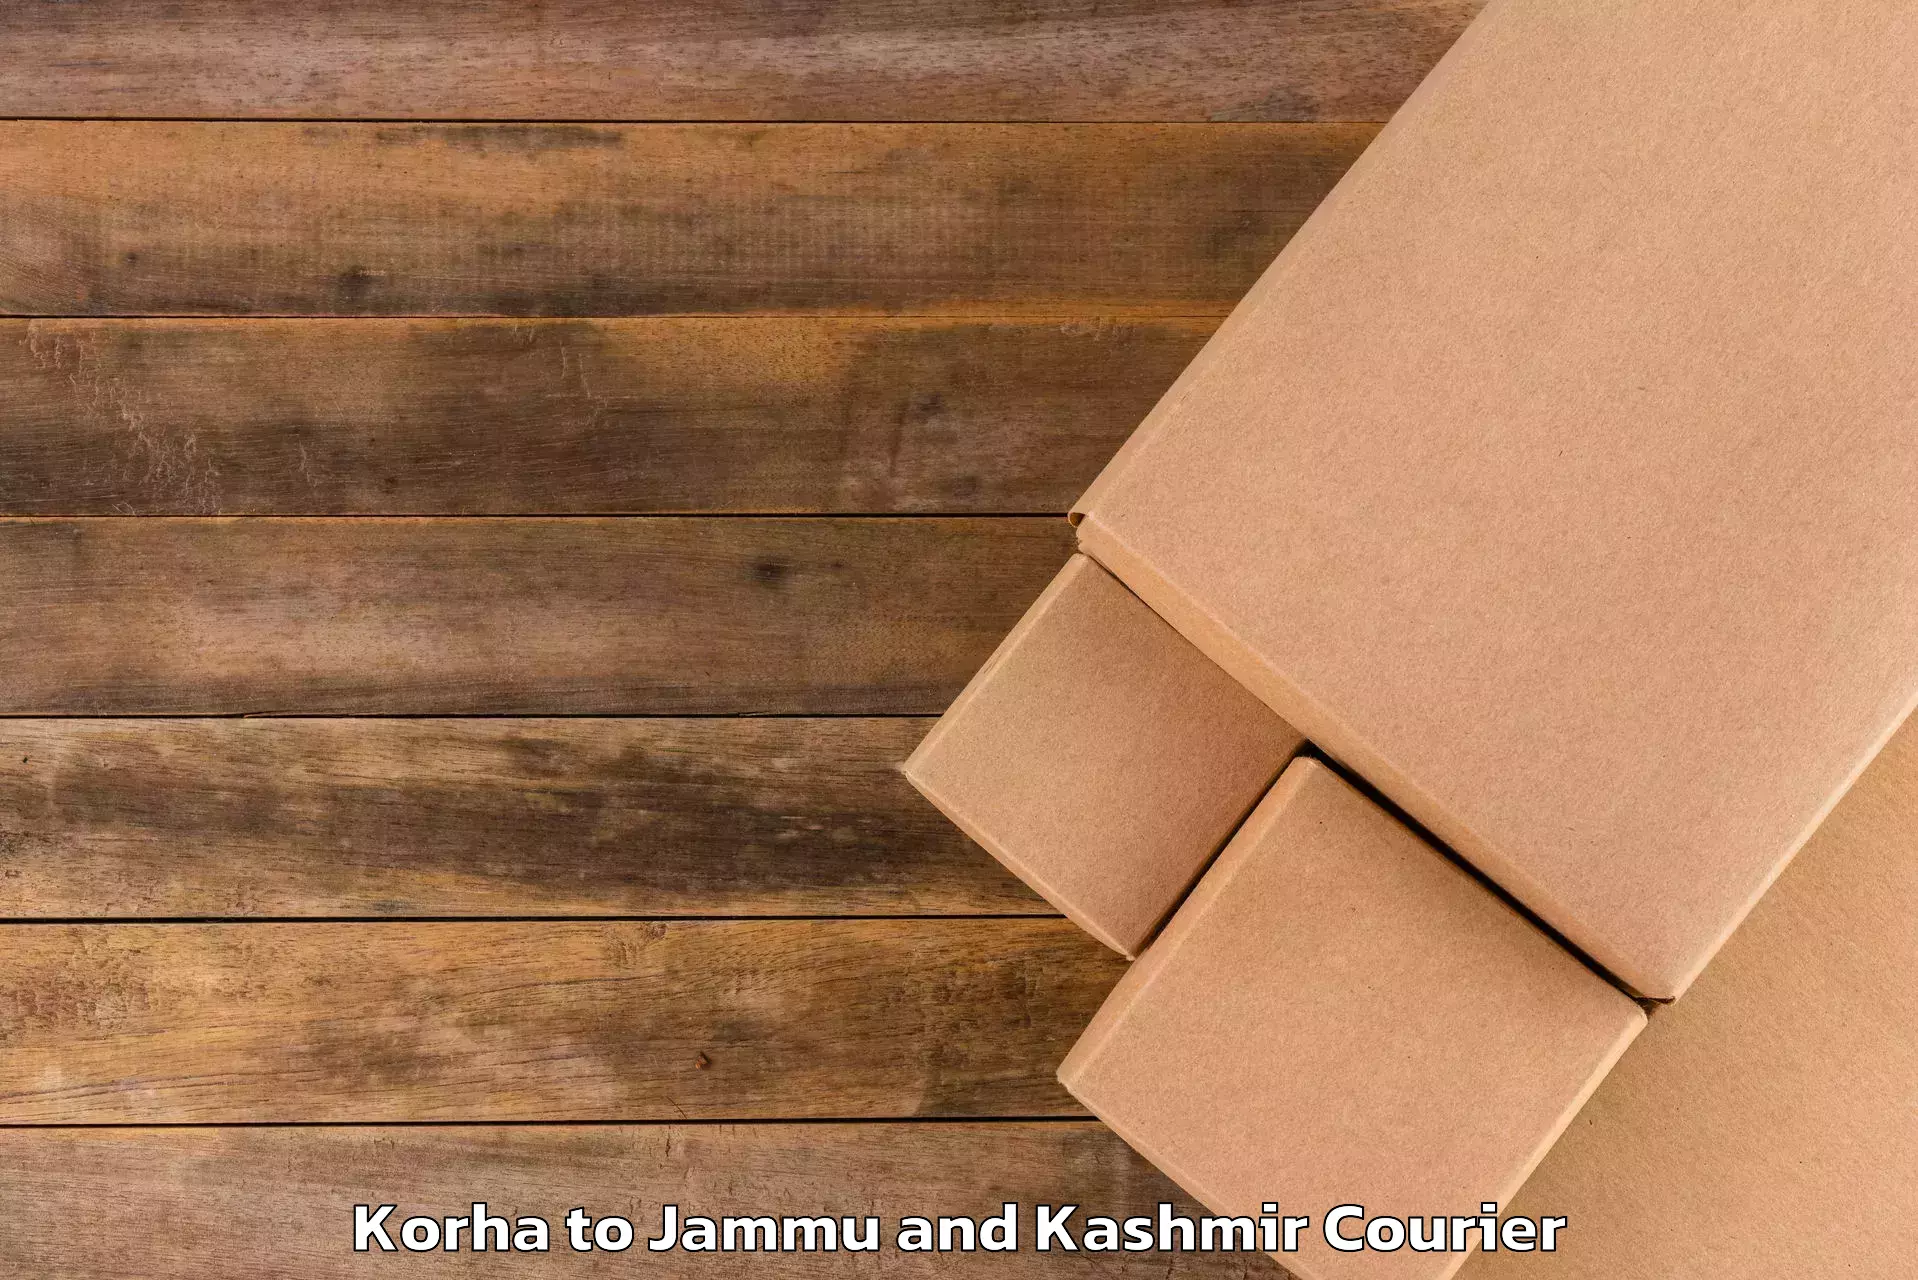 Luggage shipping service Korha to Jammu and Kashmir